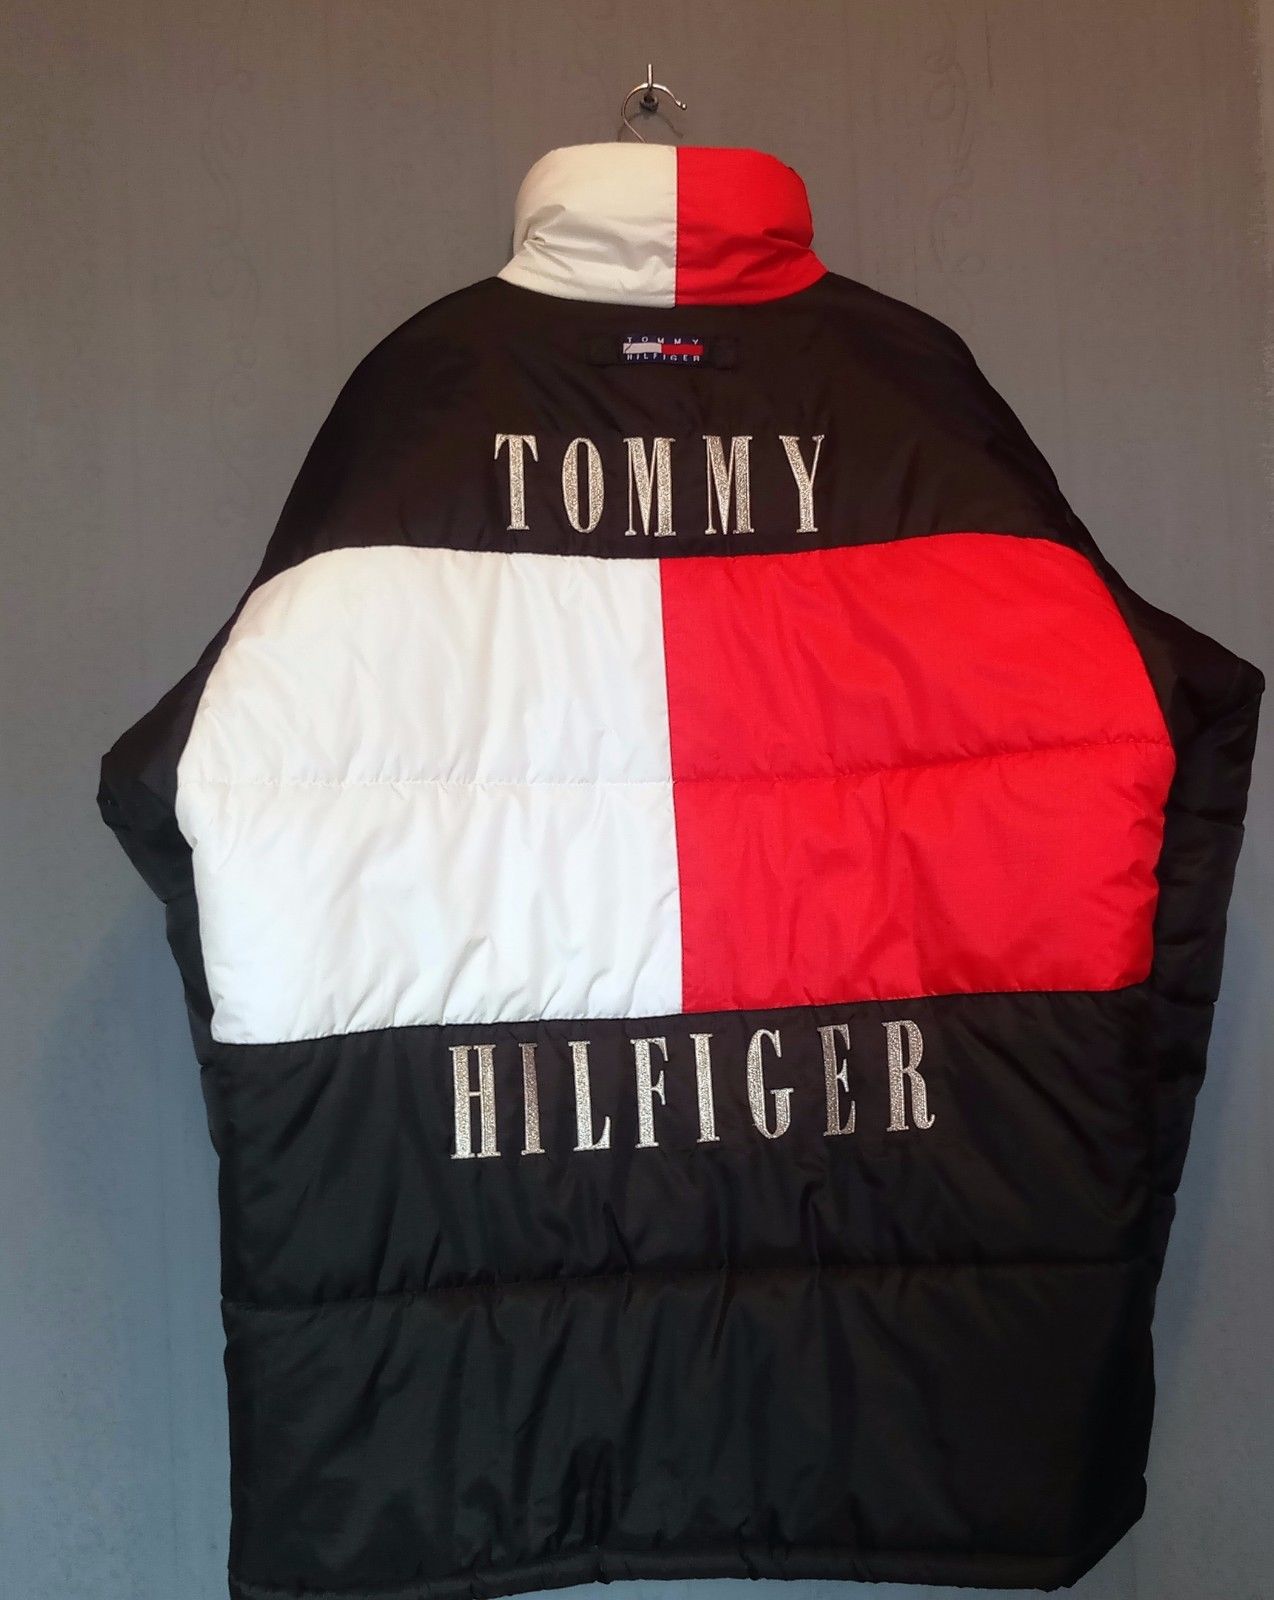 Sélection de ventes exceptionnelles de blousons et sweats Vintage Tommy Hilfiger